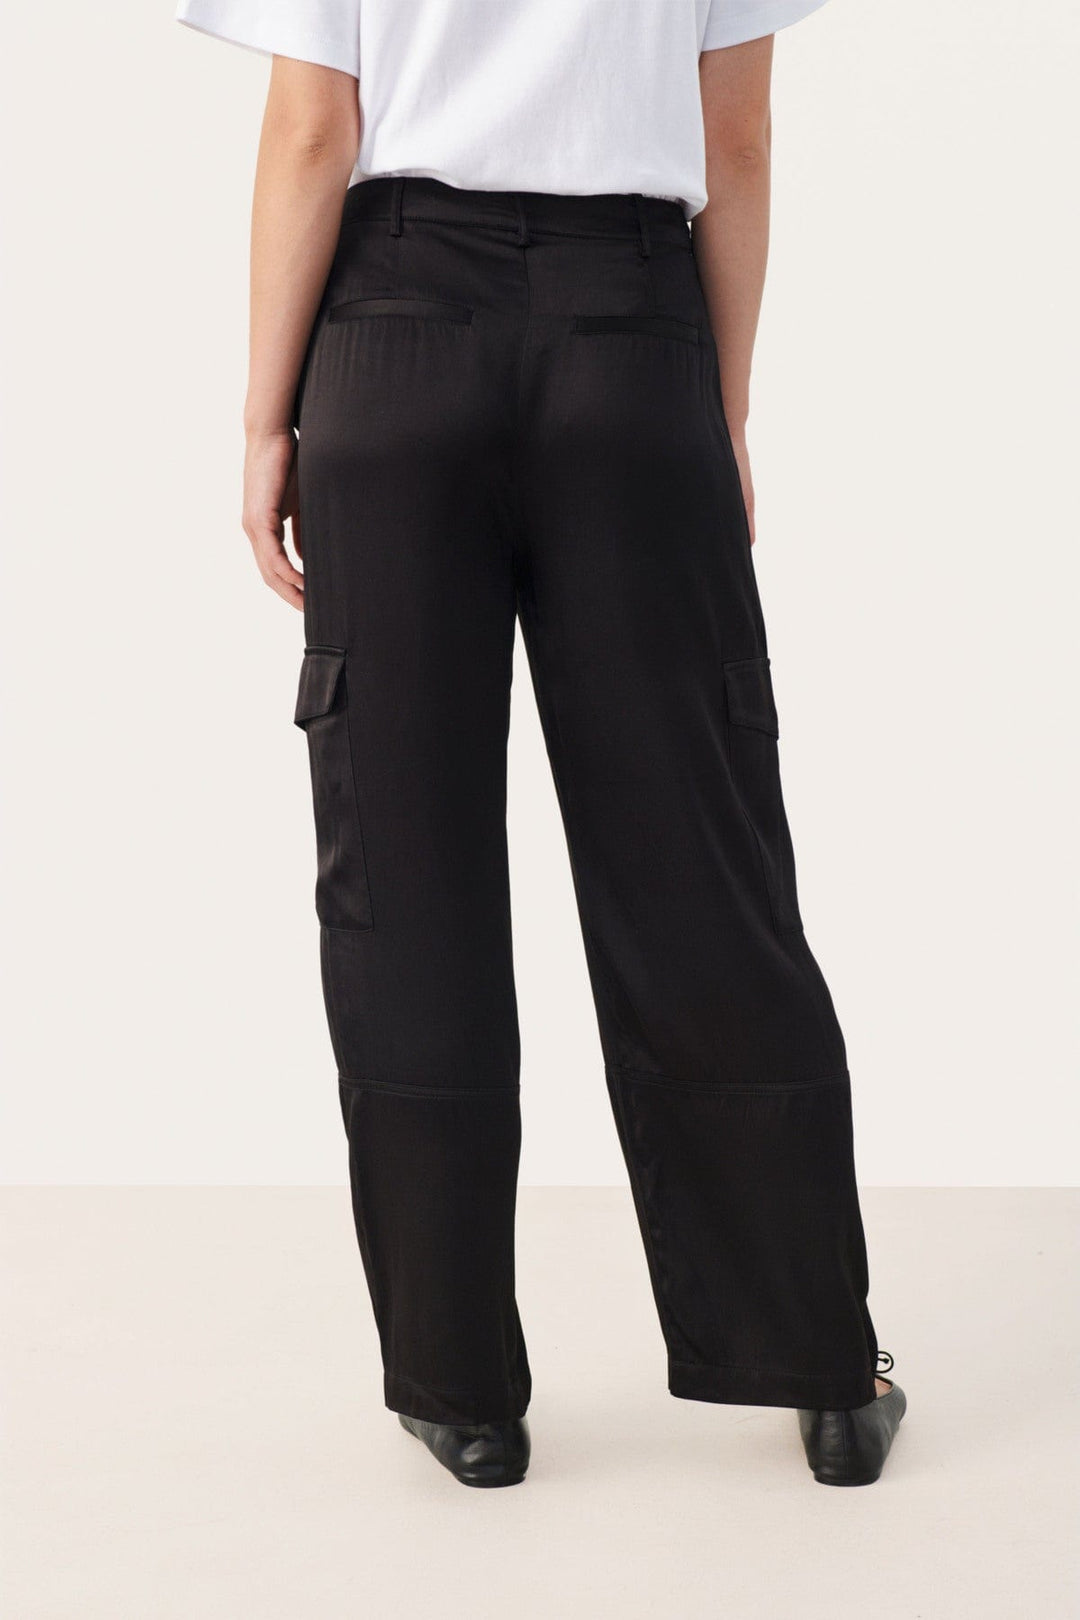 Crinepw Pants Black | Bukser | Smuk - Dameklær på nett